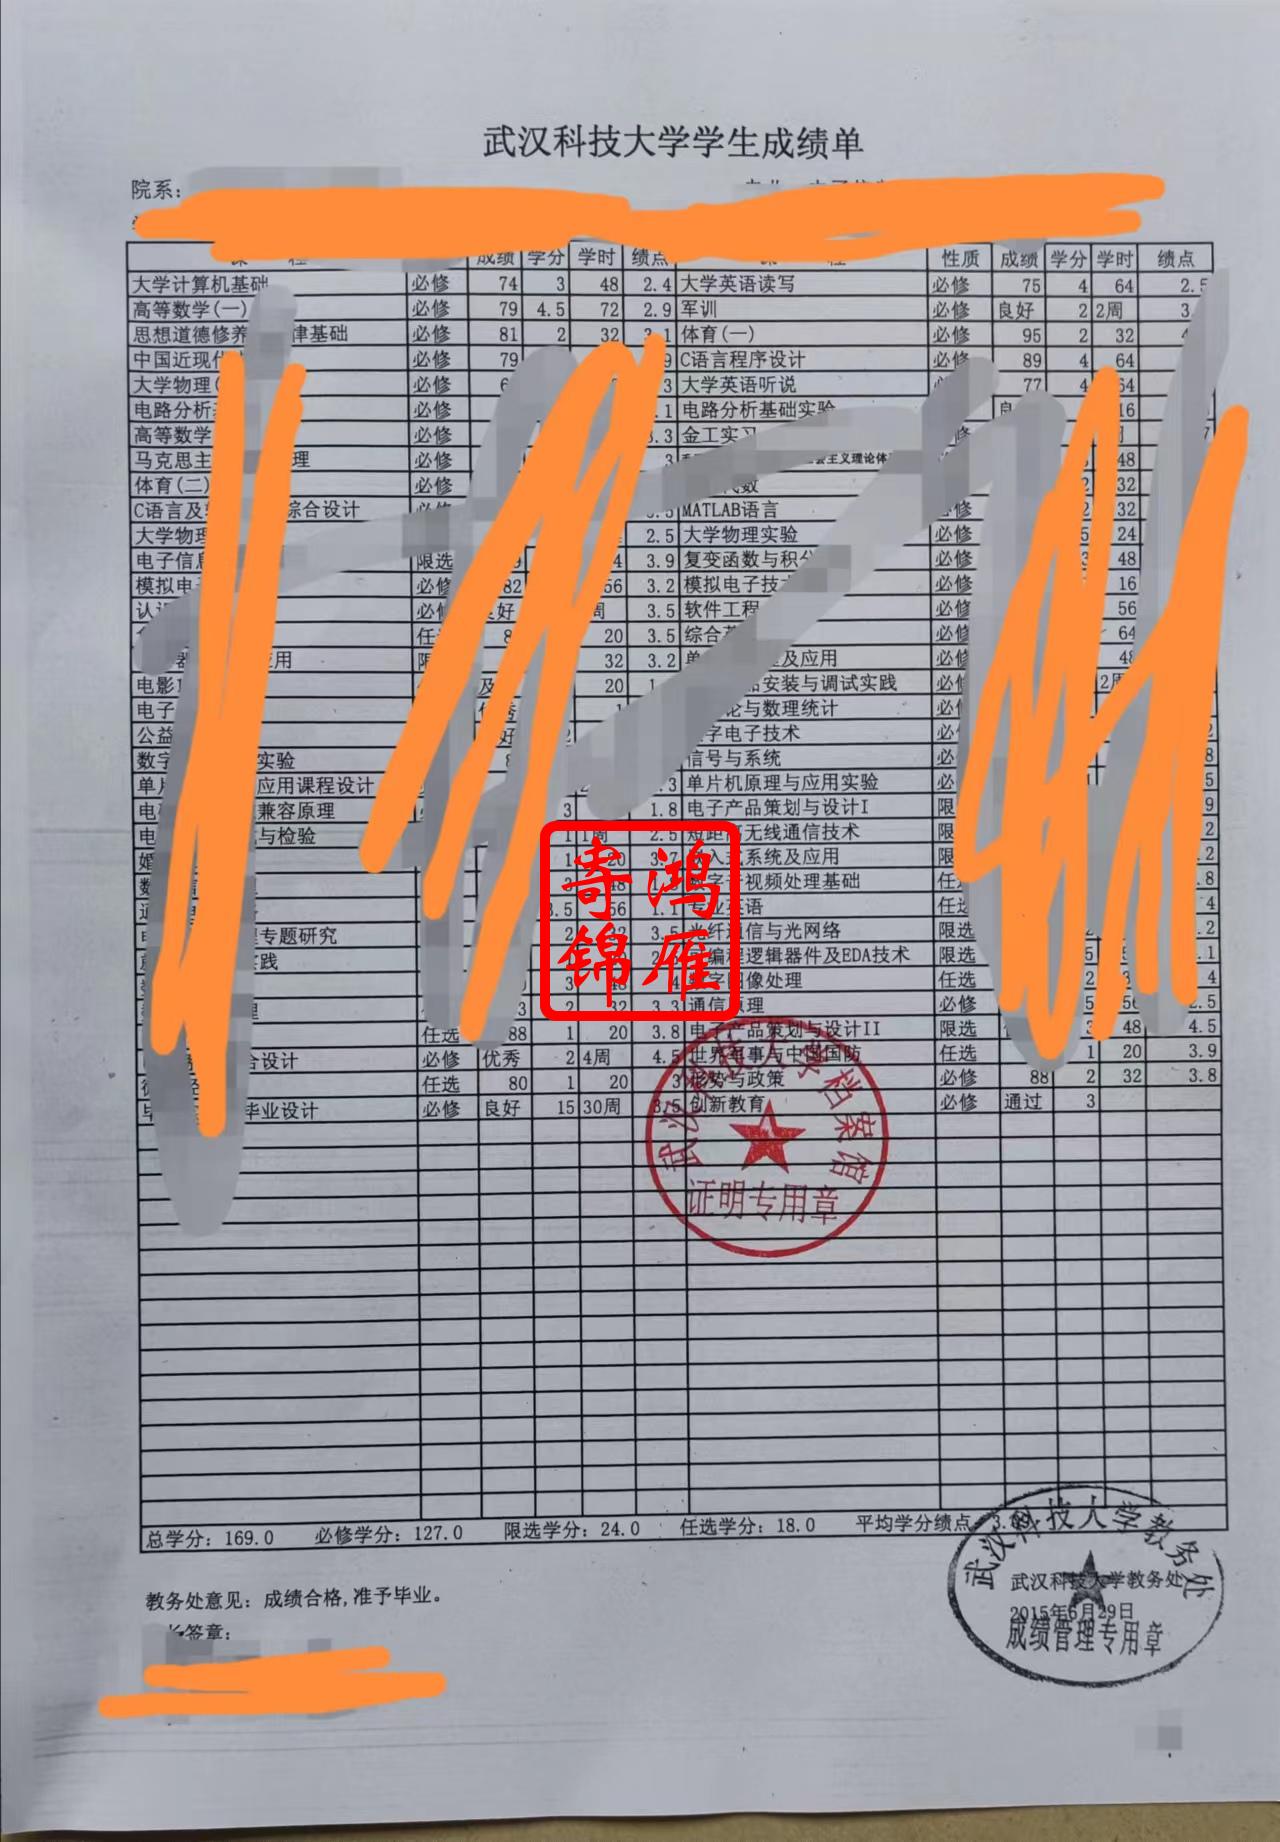 武汉科技大学本科中文成绩单打印案例.jpg